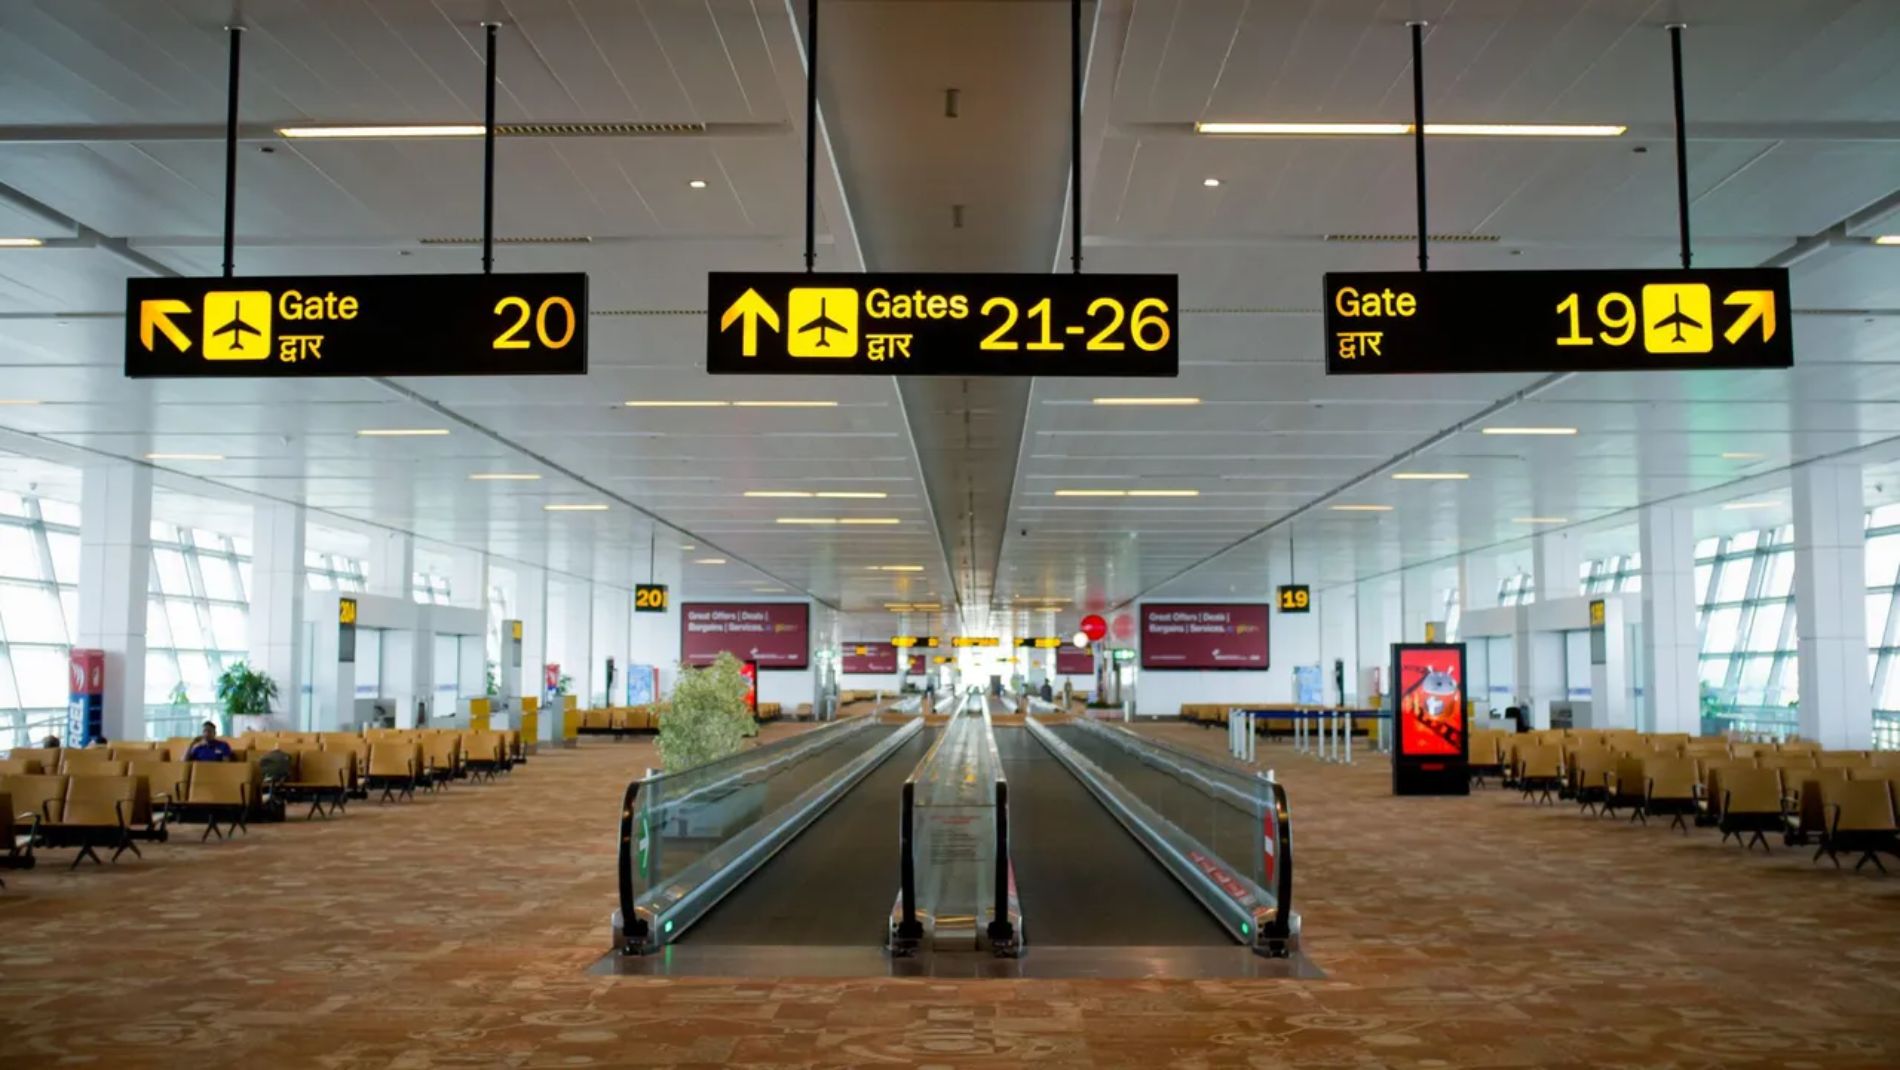 Navigate Delhi Airport Easily